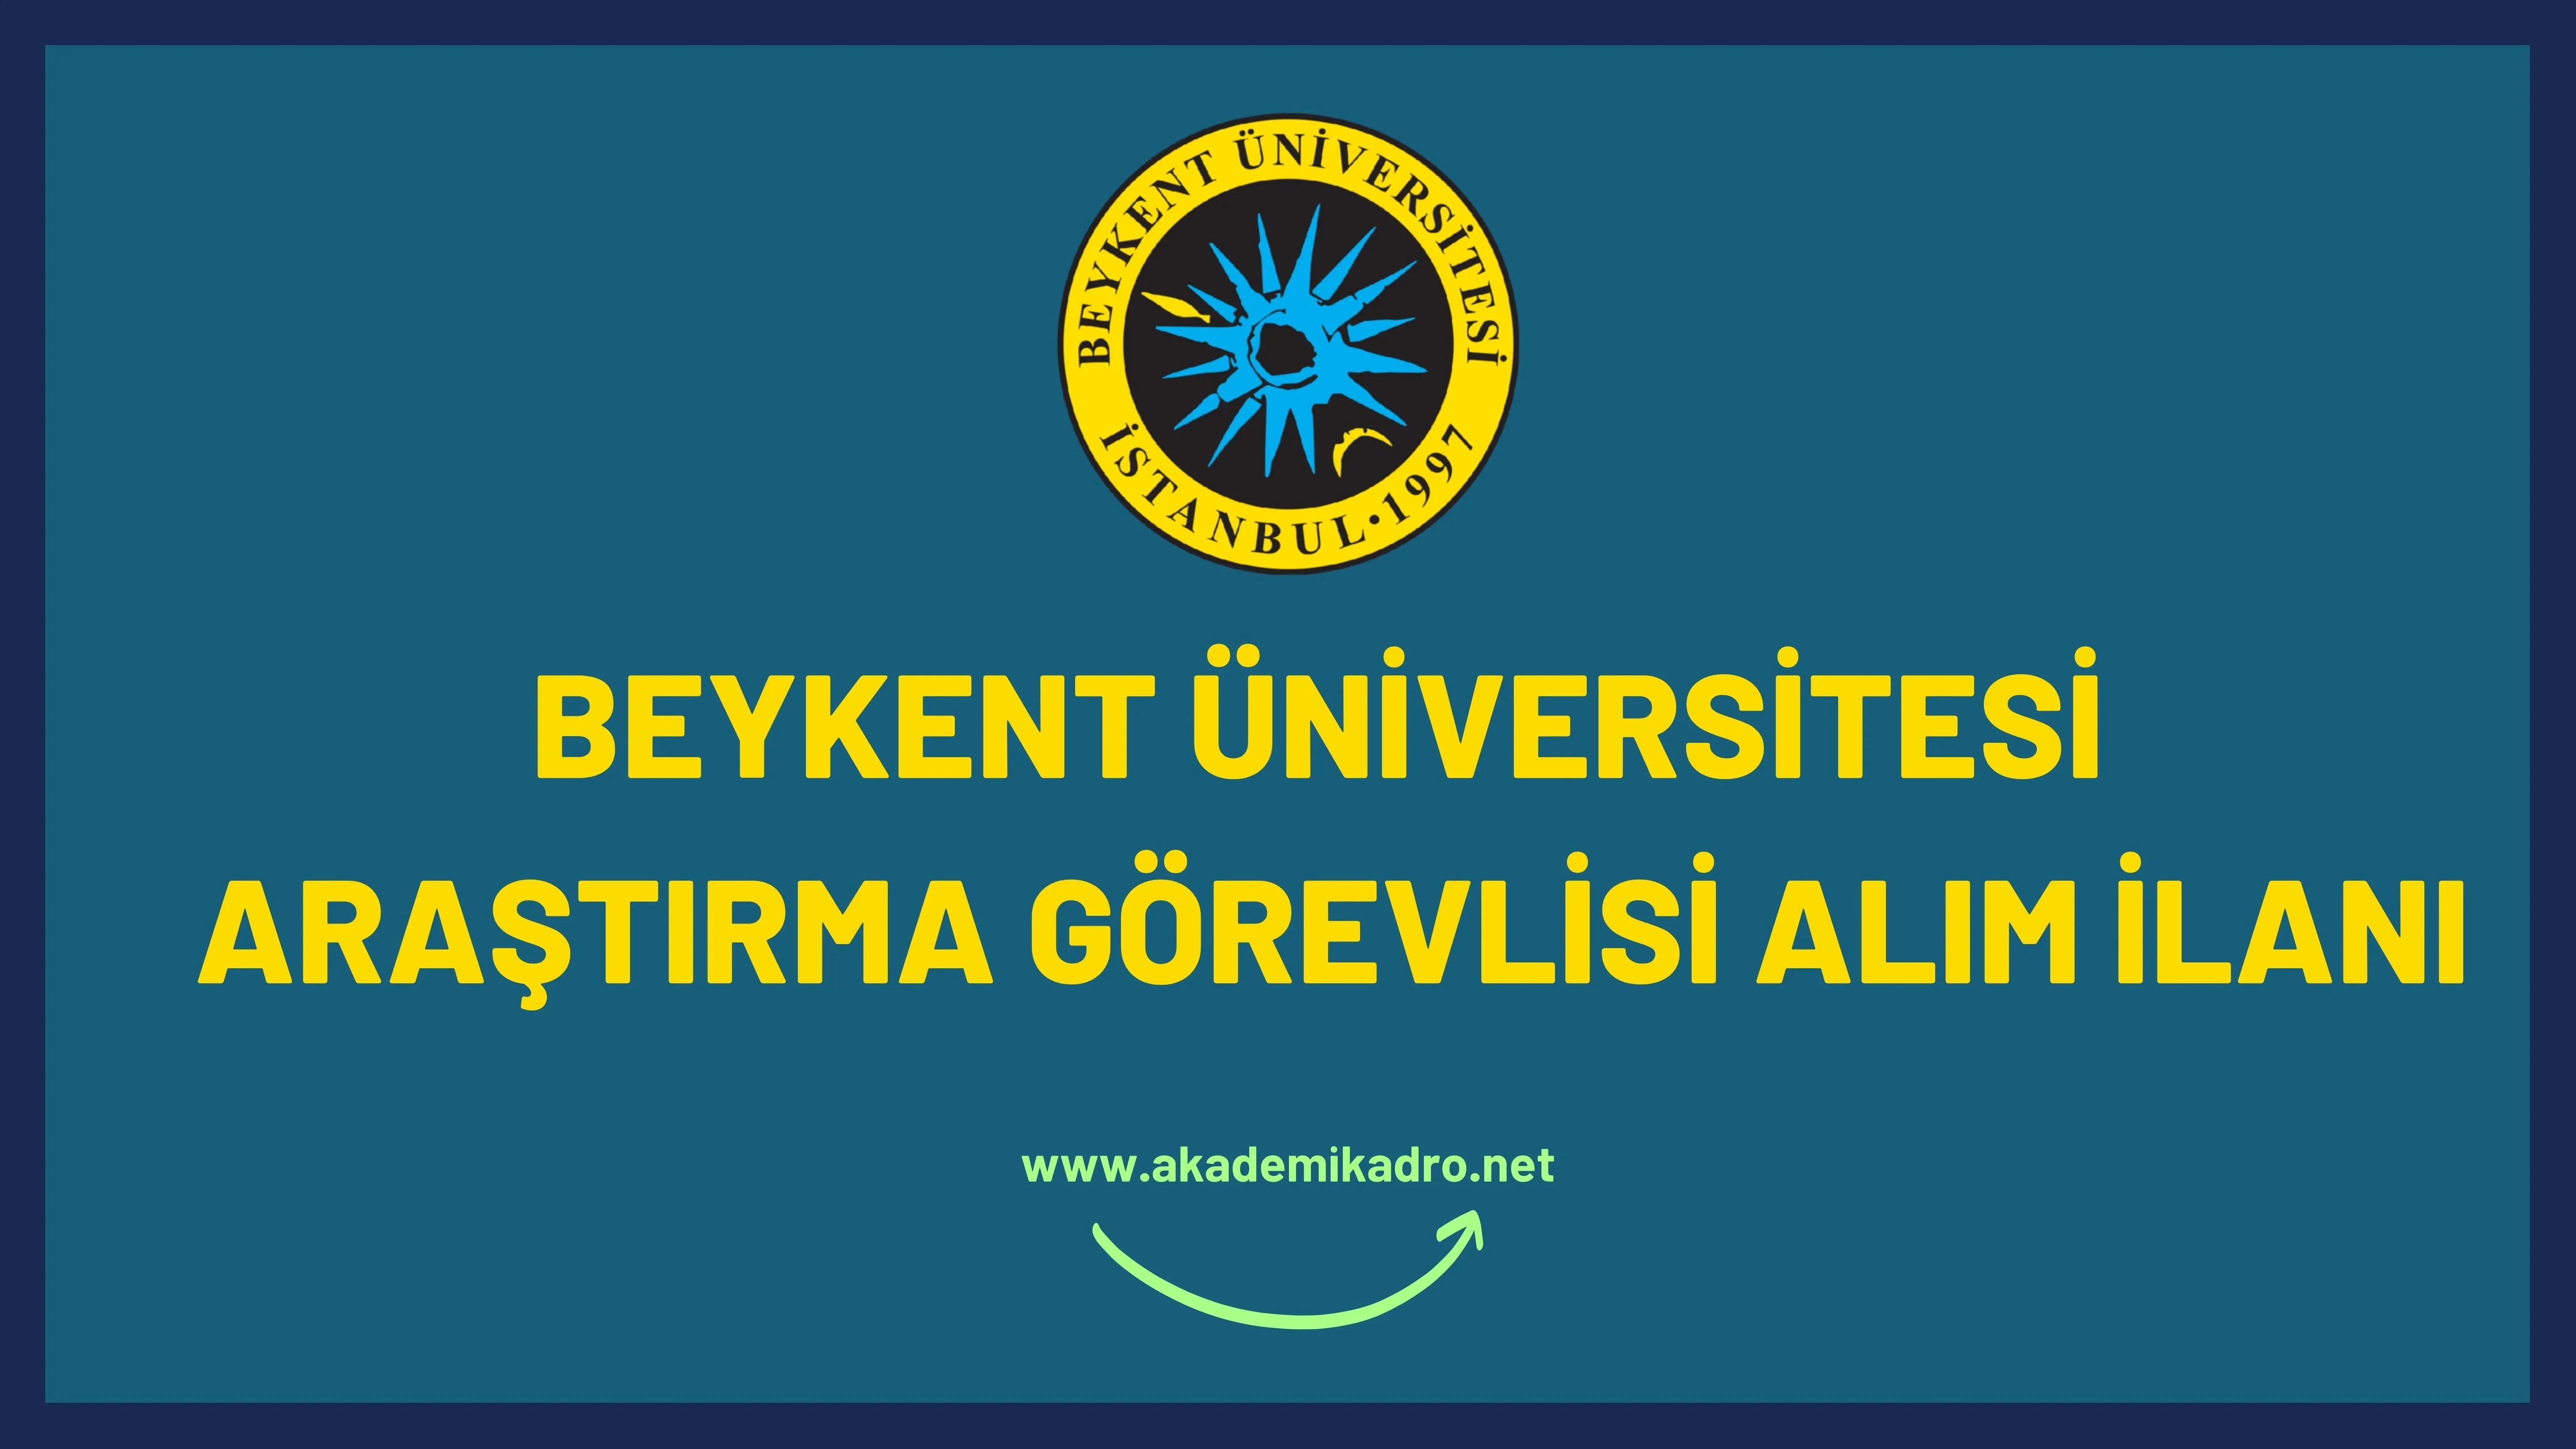 İstanbul Beykent Üniversitesi 33 öğretim üyesi, 8 Araştırma görevlisi ve 6 Öğretim görevlisi alacaktır.